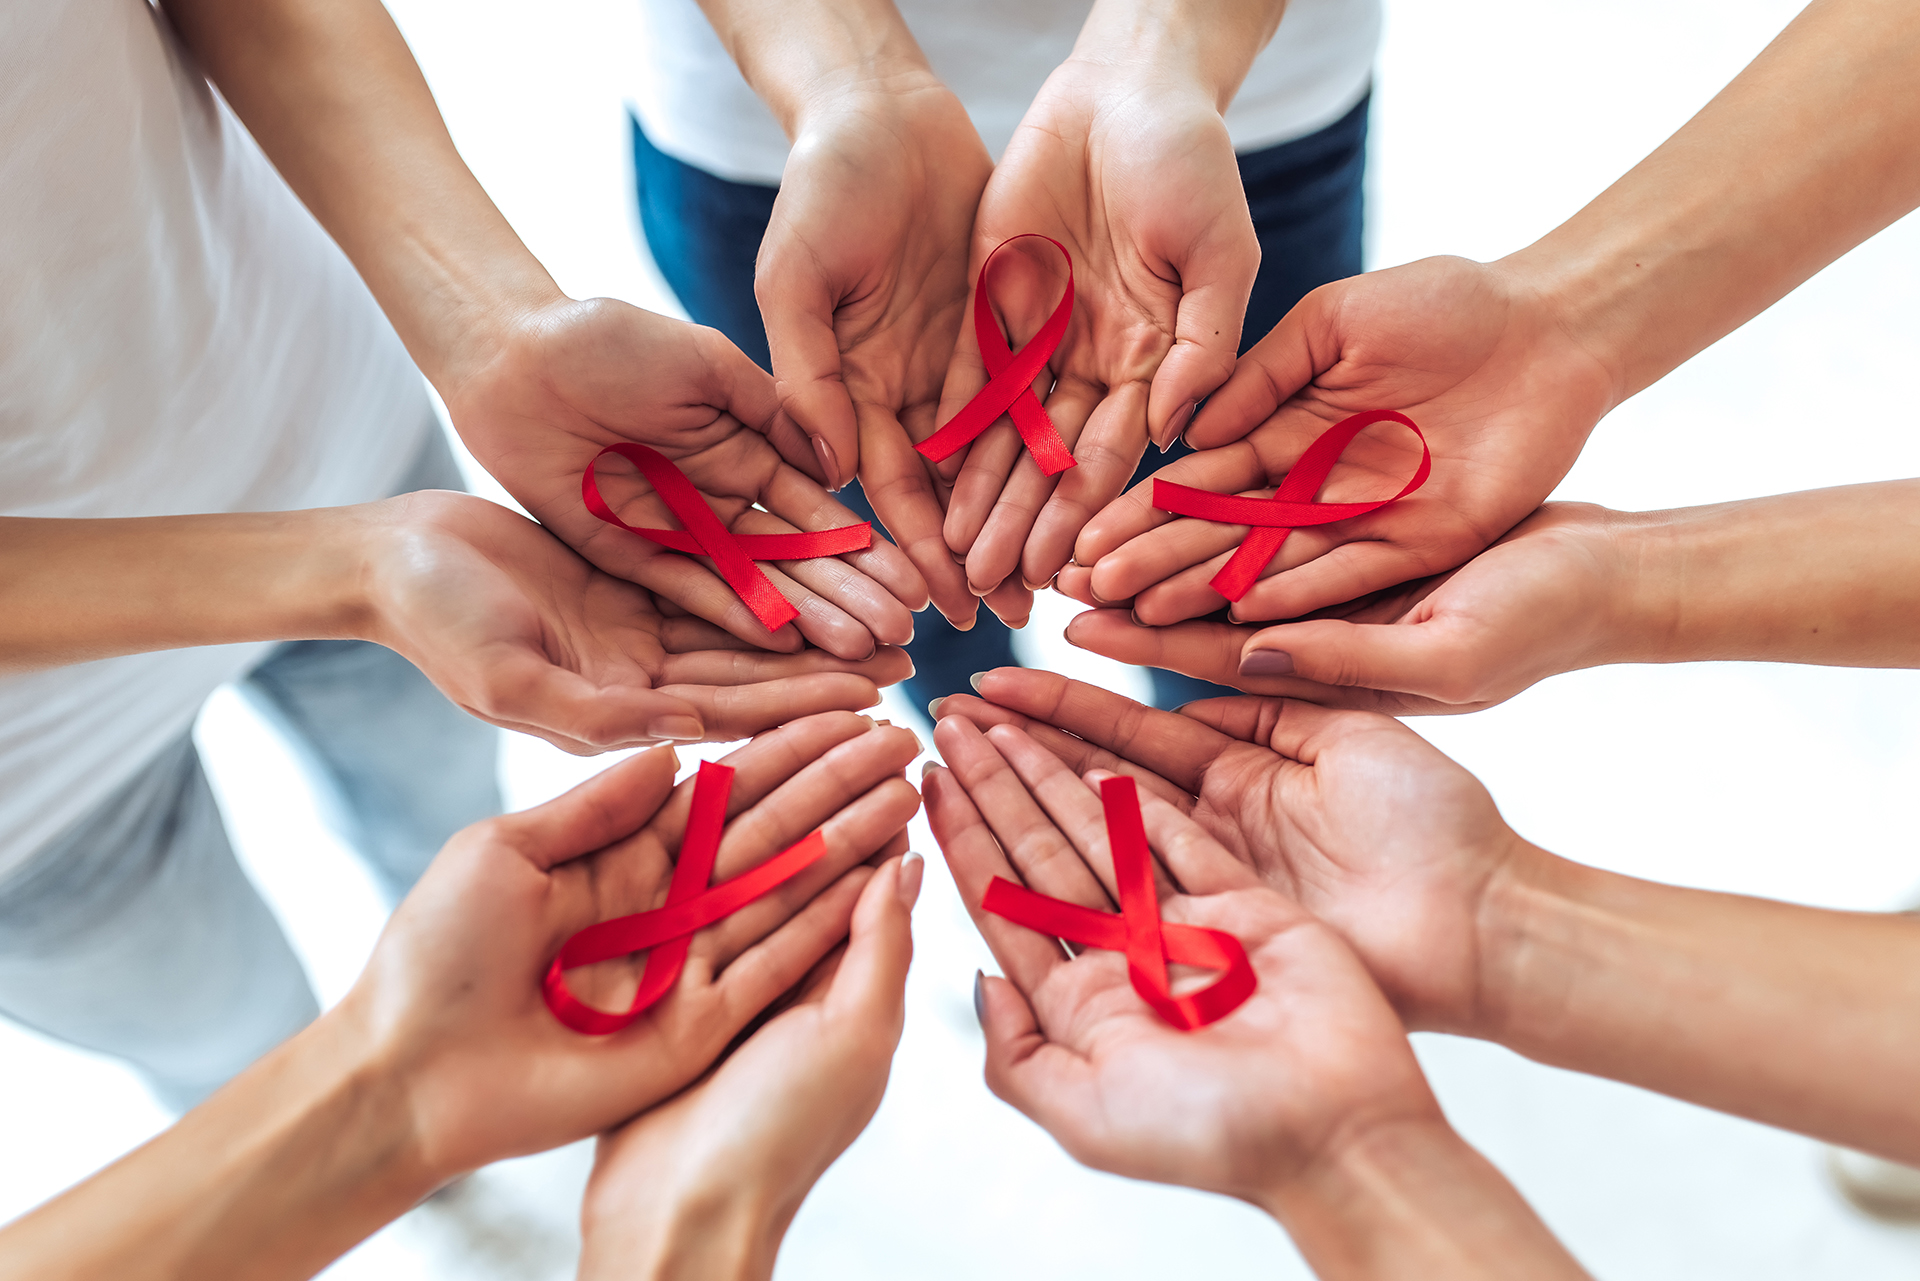 Hay 1,7 millones de nuevas infecciones por VIH anualmente y más de 1 millón de nuevos casos de ITS curables todos los días, según ONUSIDA y la Organización Mundial de la Salud, respectivamente (Shutterstock)